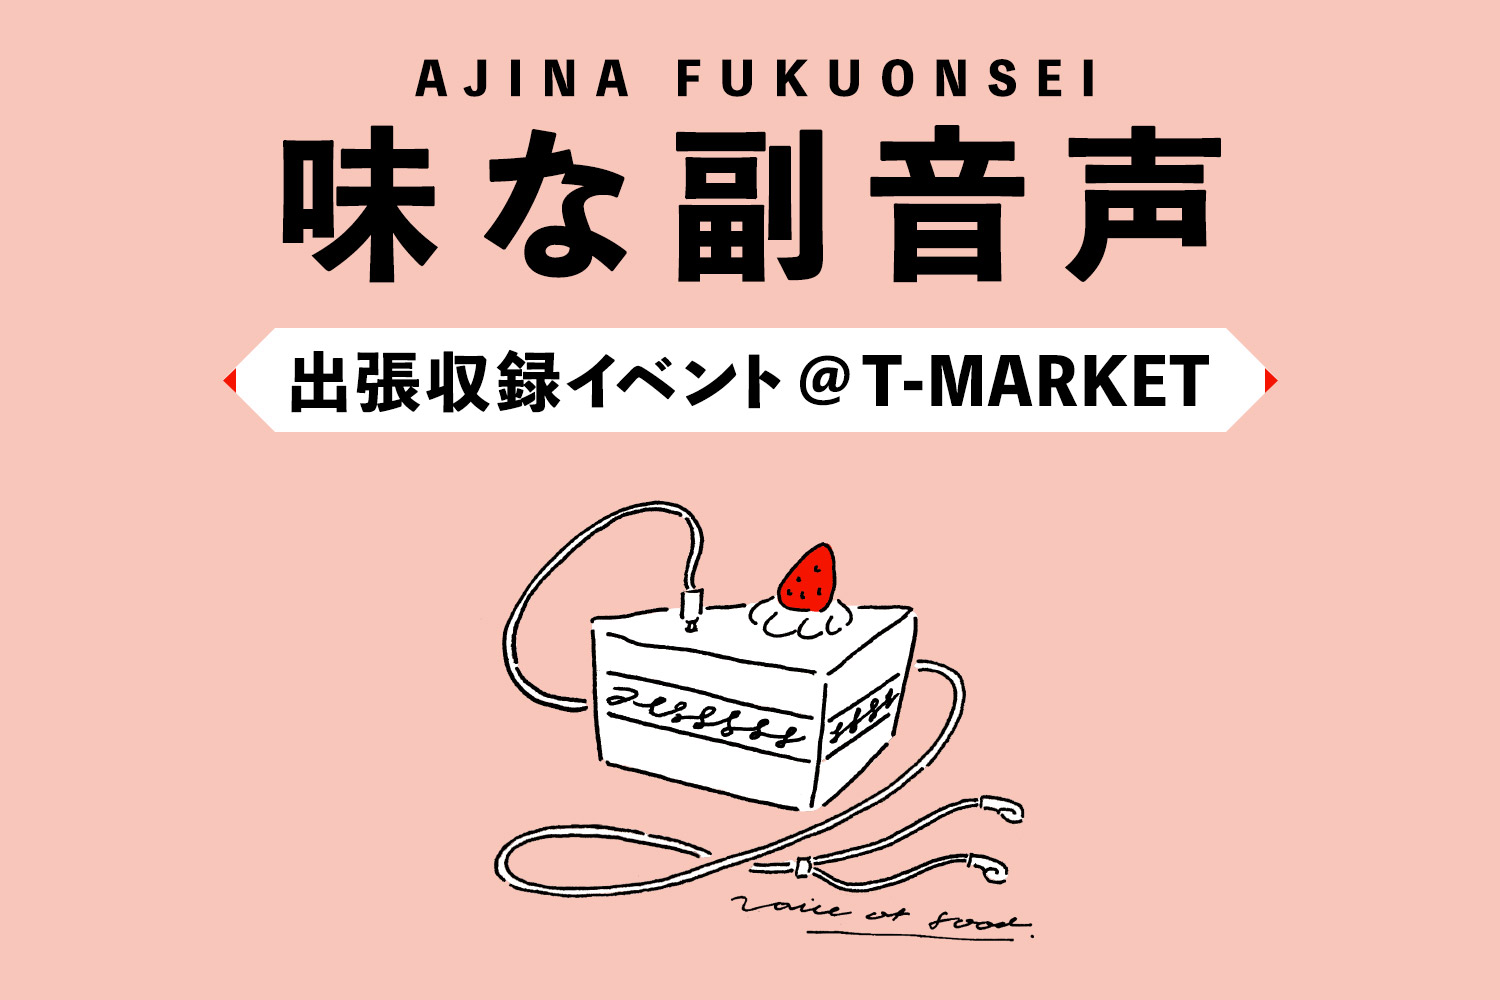 平野紗季子がシェフと対談「味な副音声 ～voice of food～」出張収録イベント@ T-MARKET開催